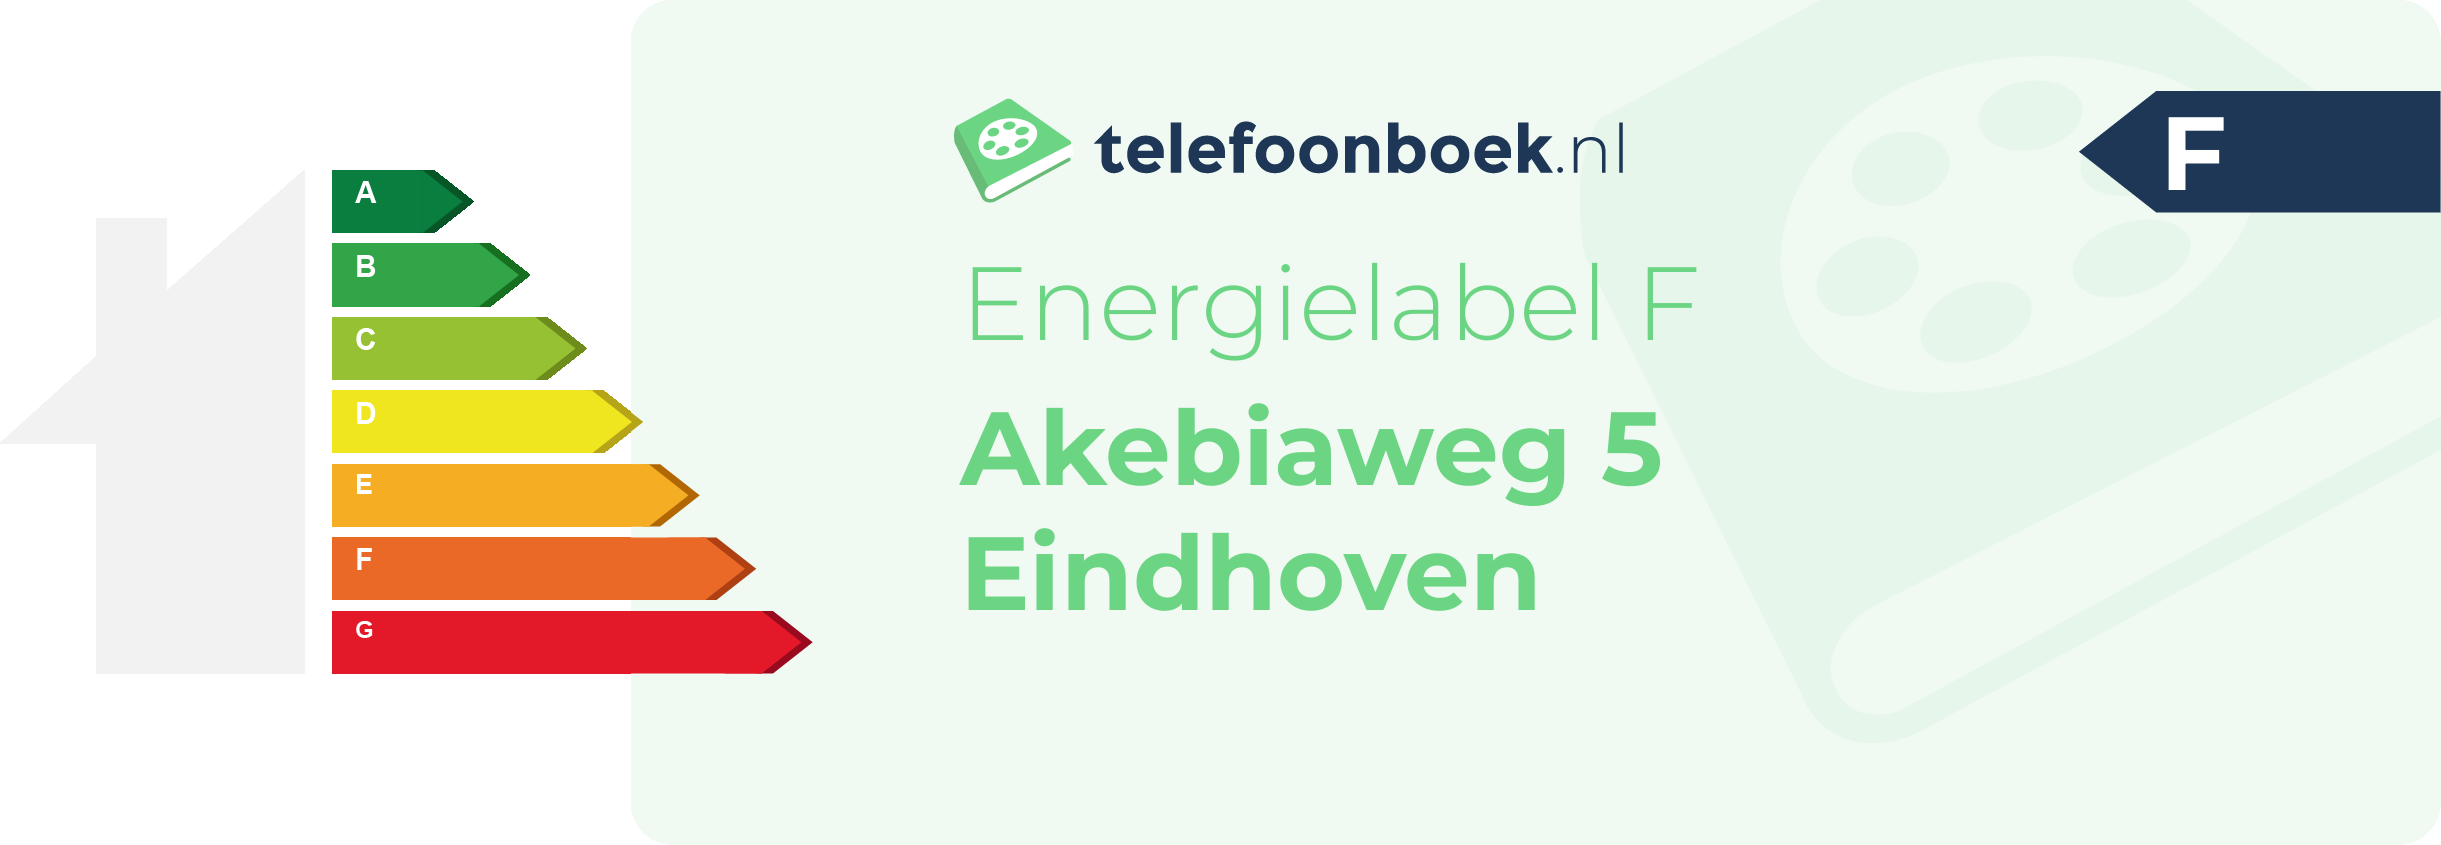 Energielabel Akebiaweg 5 Eindhoven